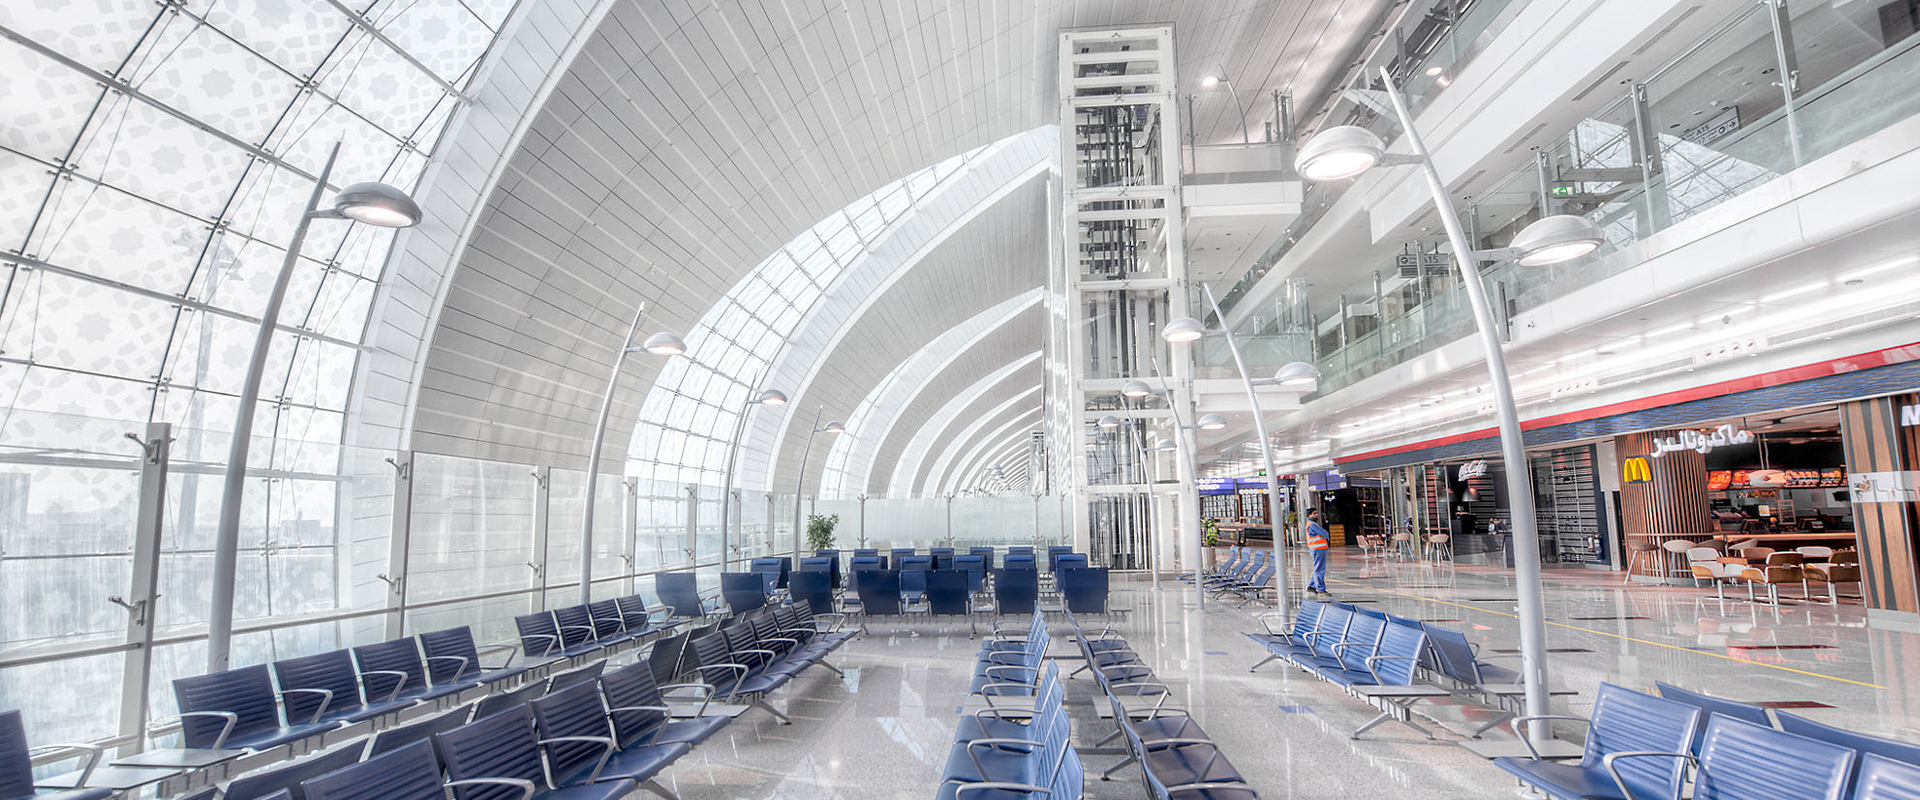 Éclairage d'aéroports : améliorer la sécurité